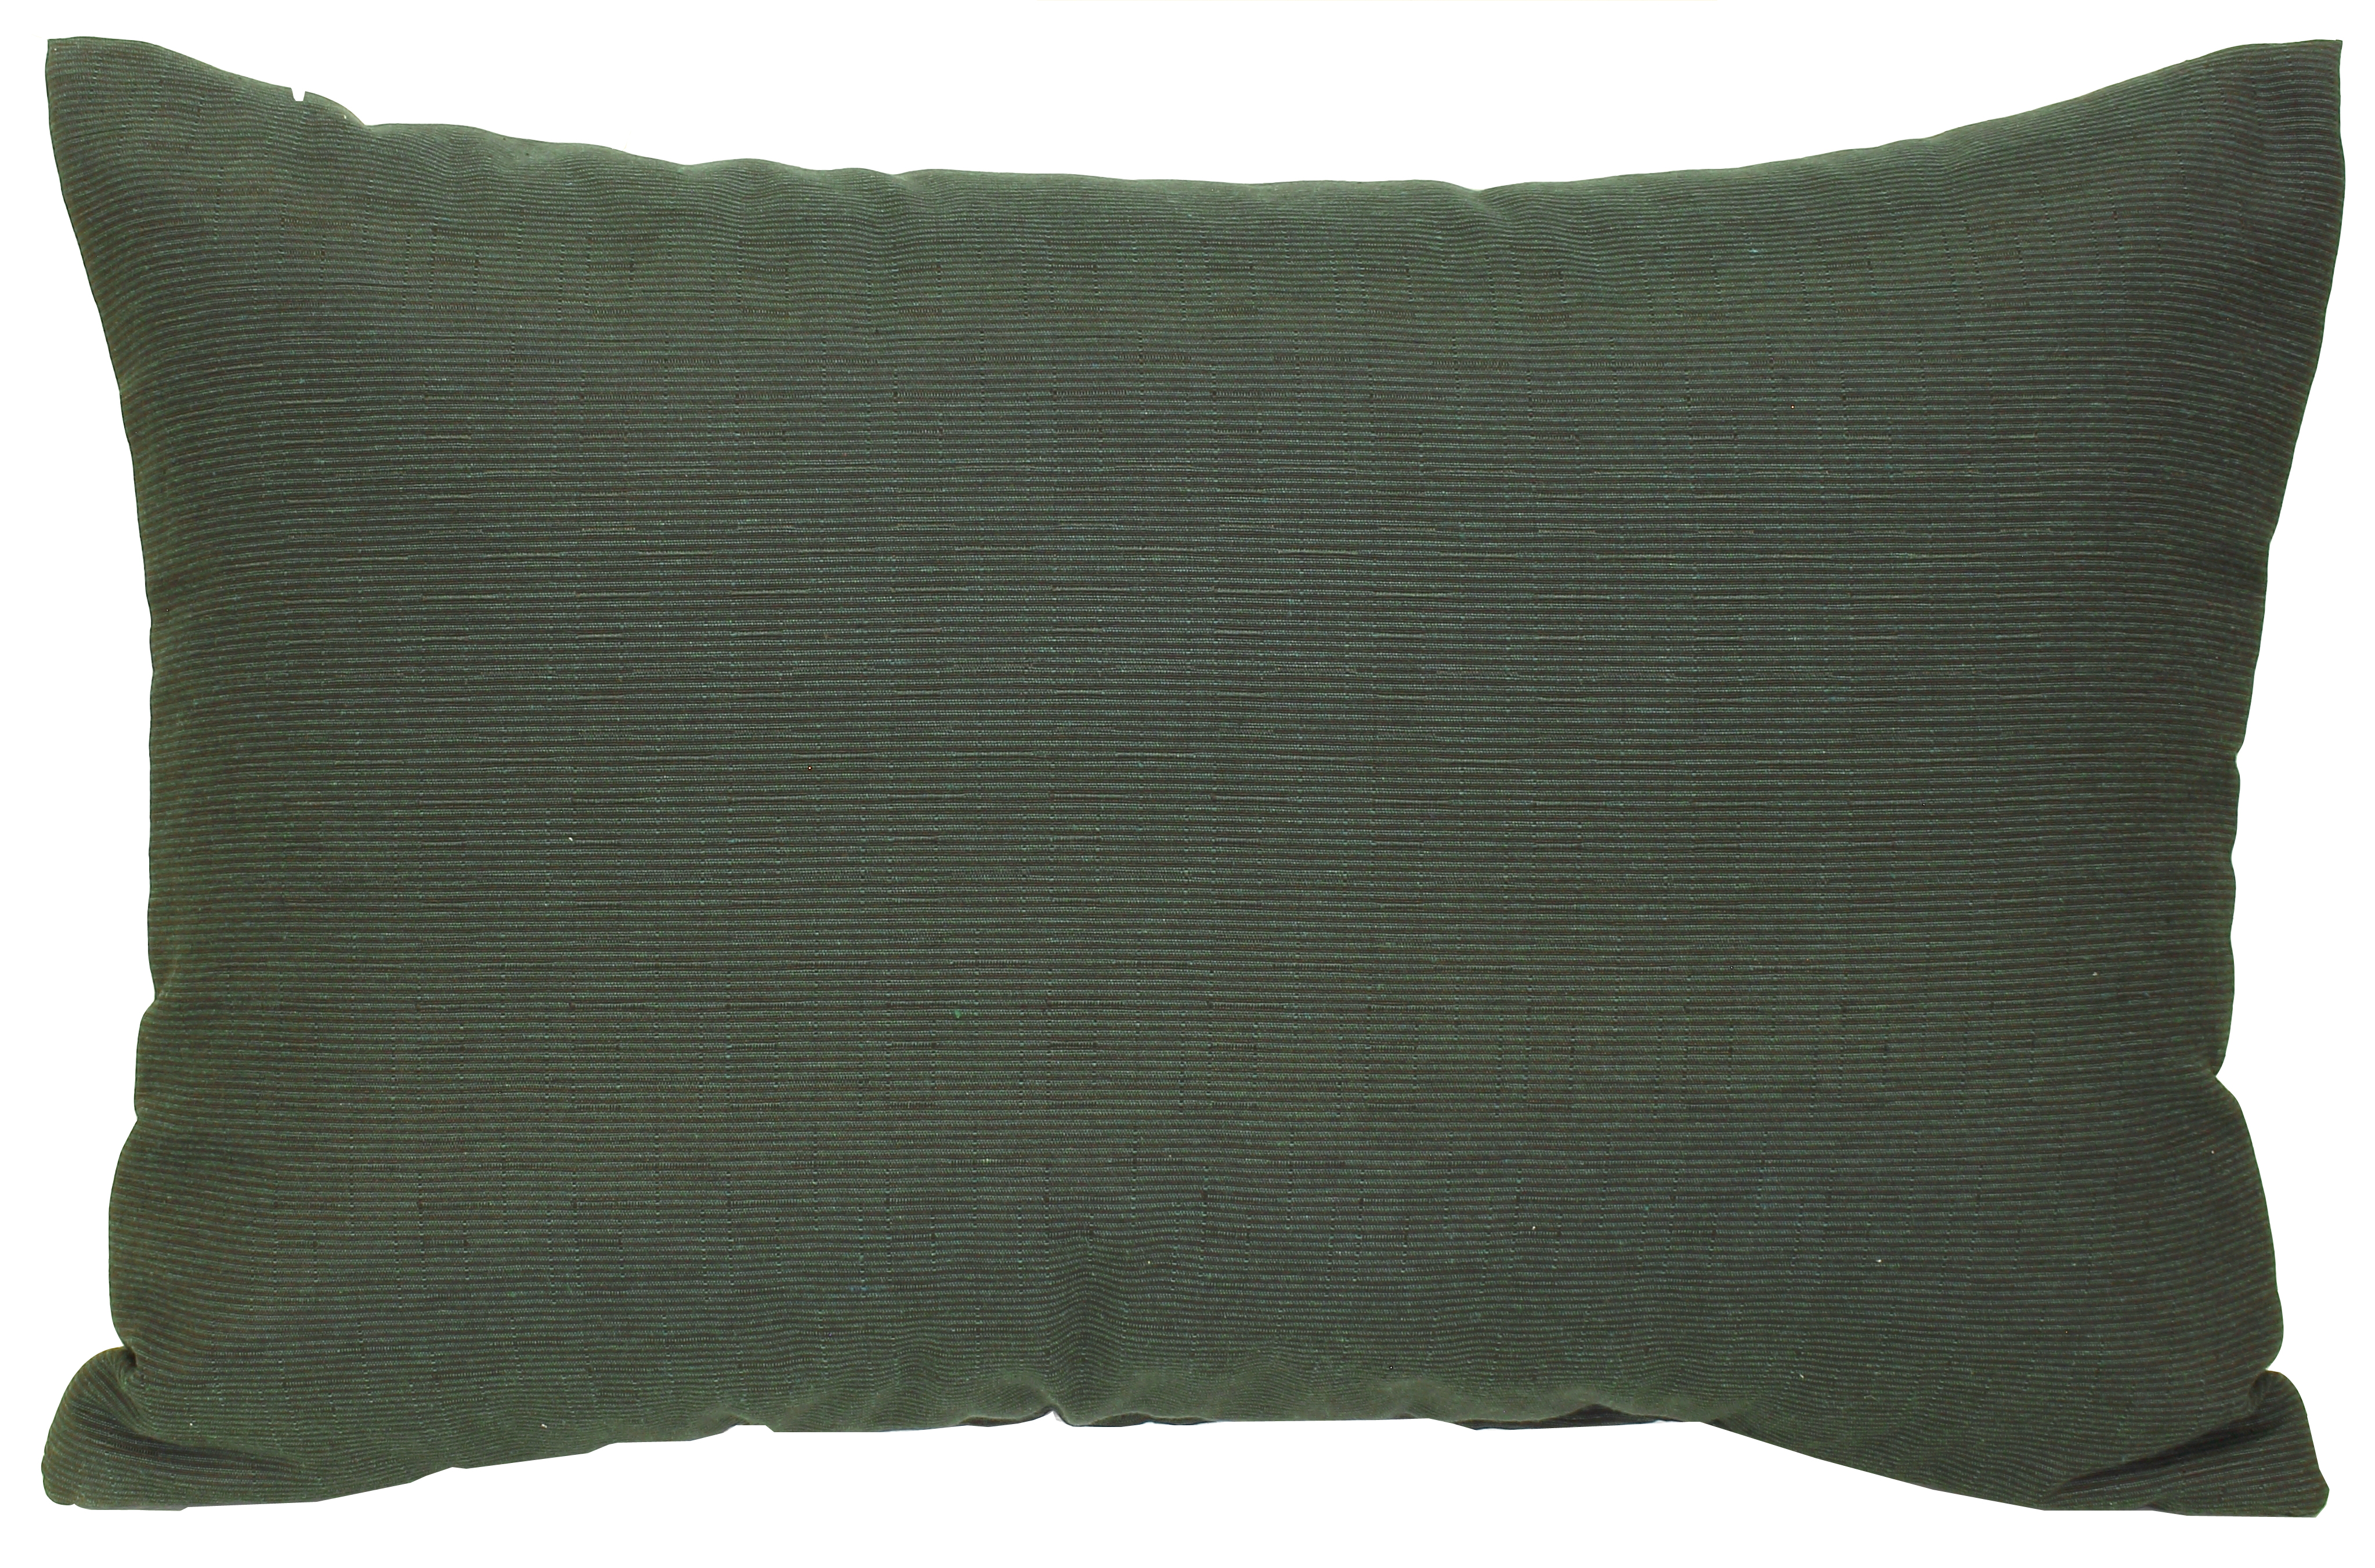 Quergestreiftes Zierkissen für Sessel oder Lounge Gruppen ca. 60 x 40 cm in dunkelgrün